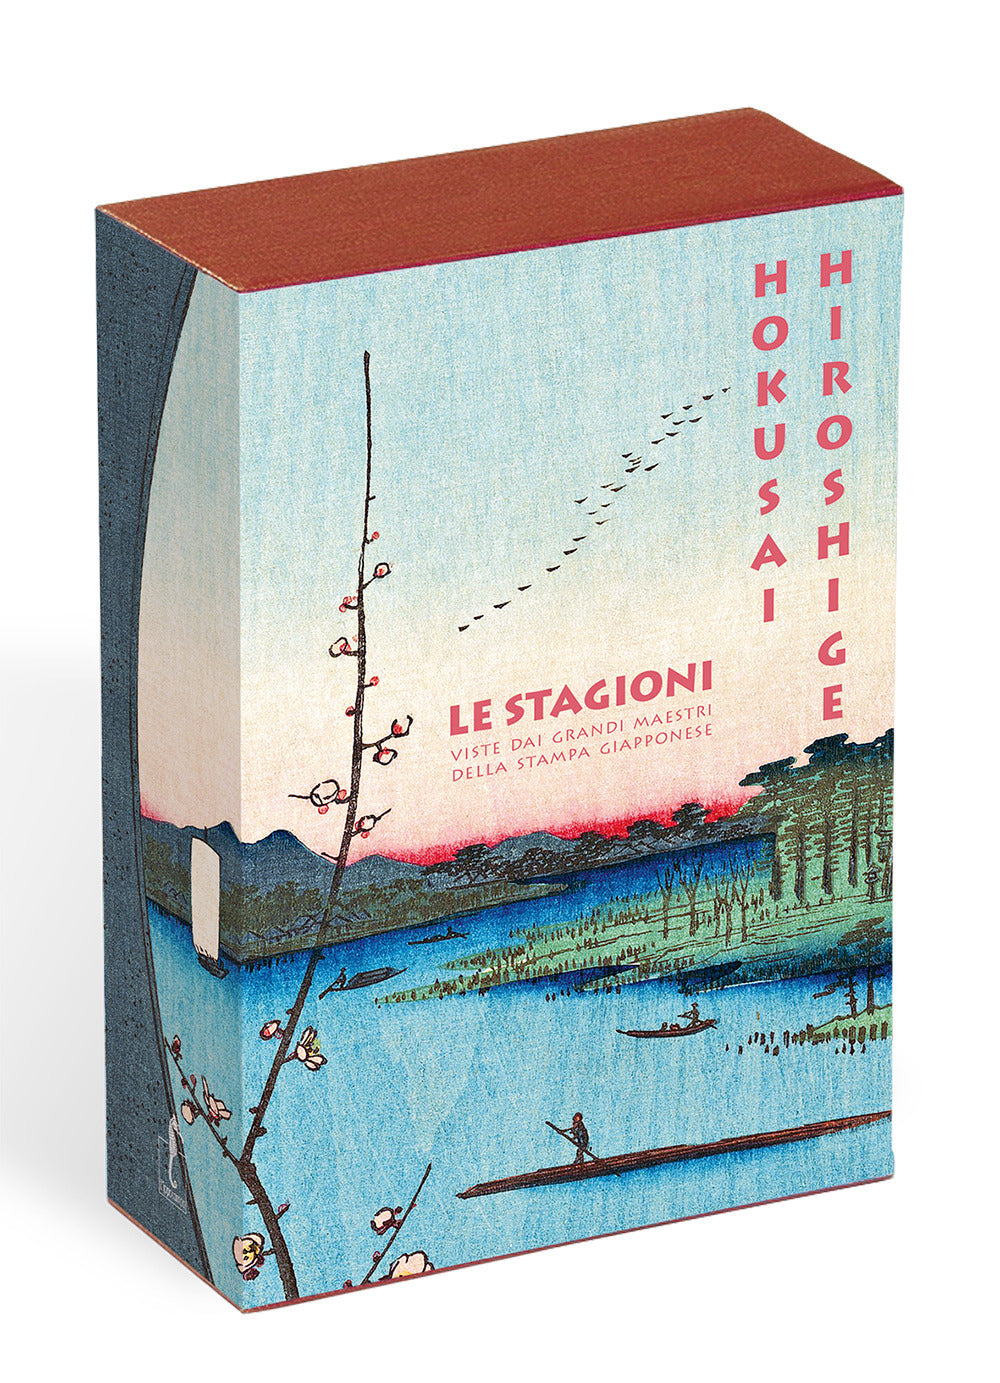 Hokusai. Hiroshige. Le stagioni viste dai grandi maestri della stampa giapponese. Ediz. a colori.